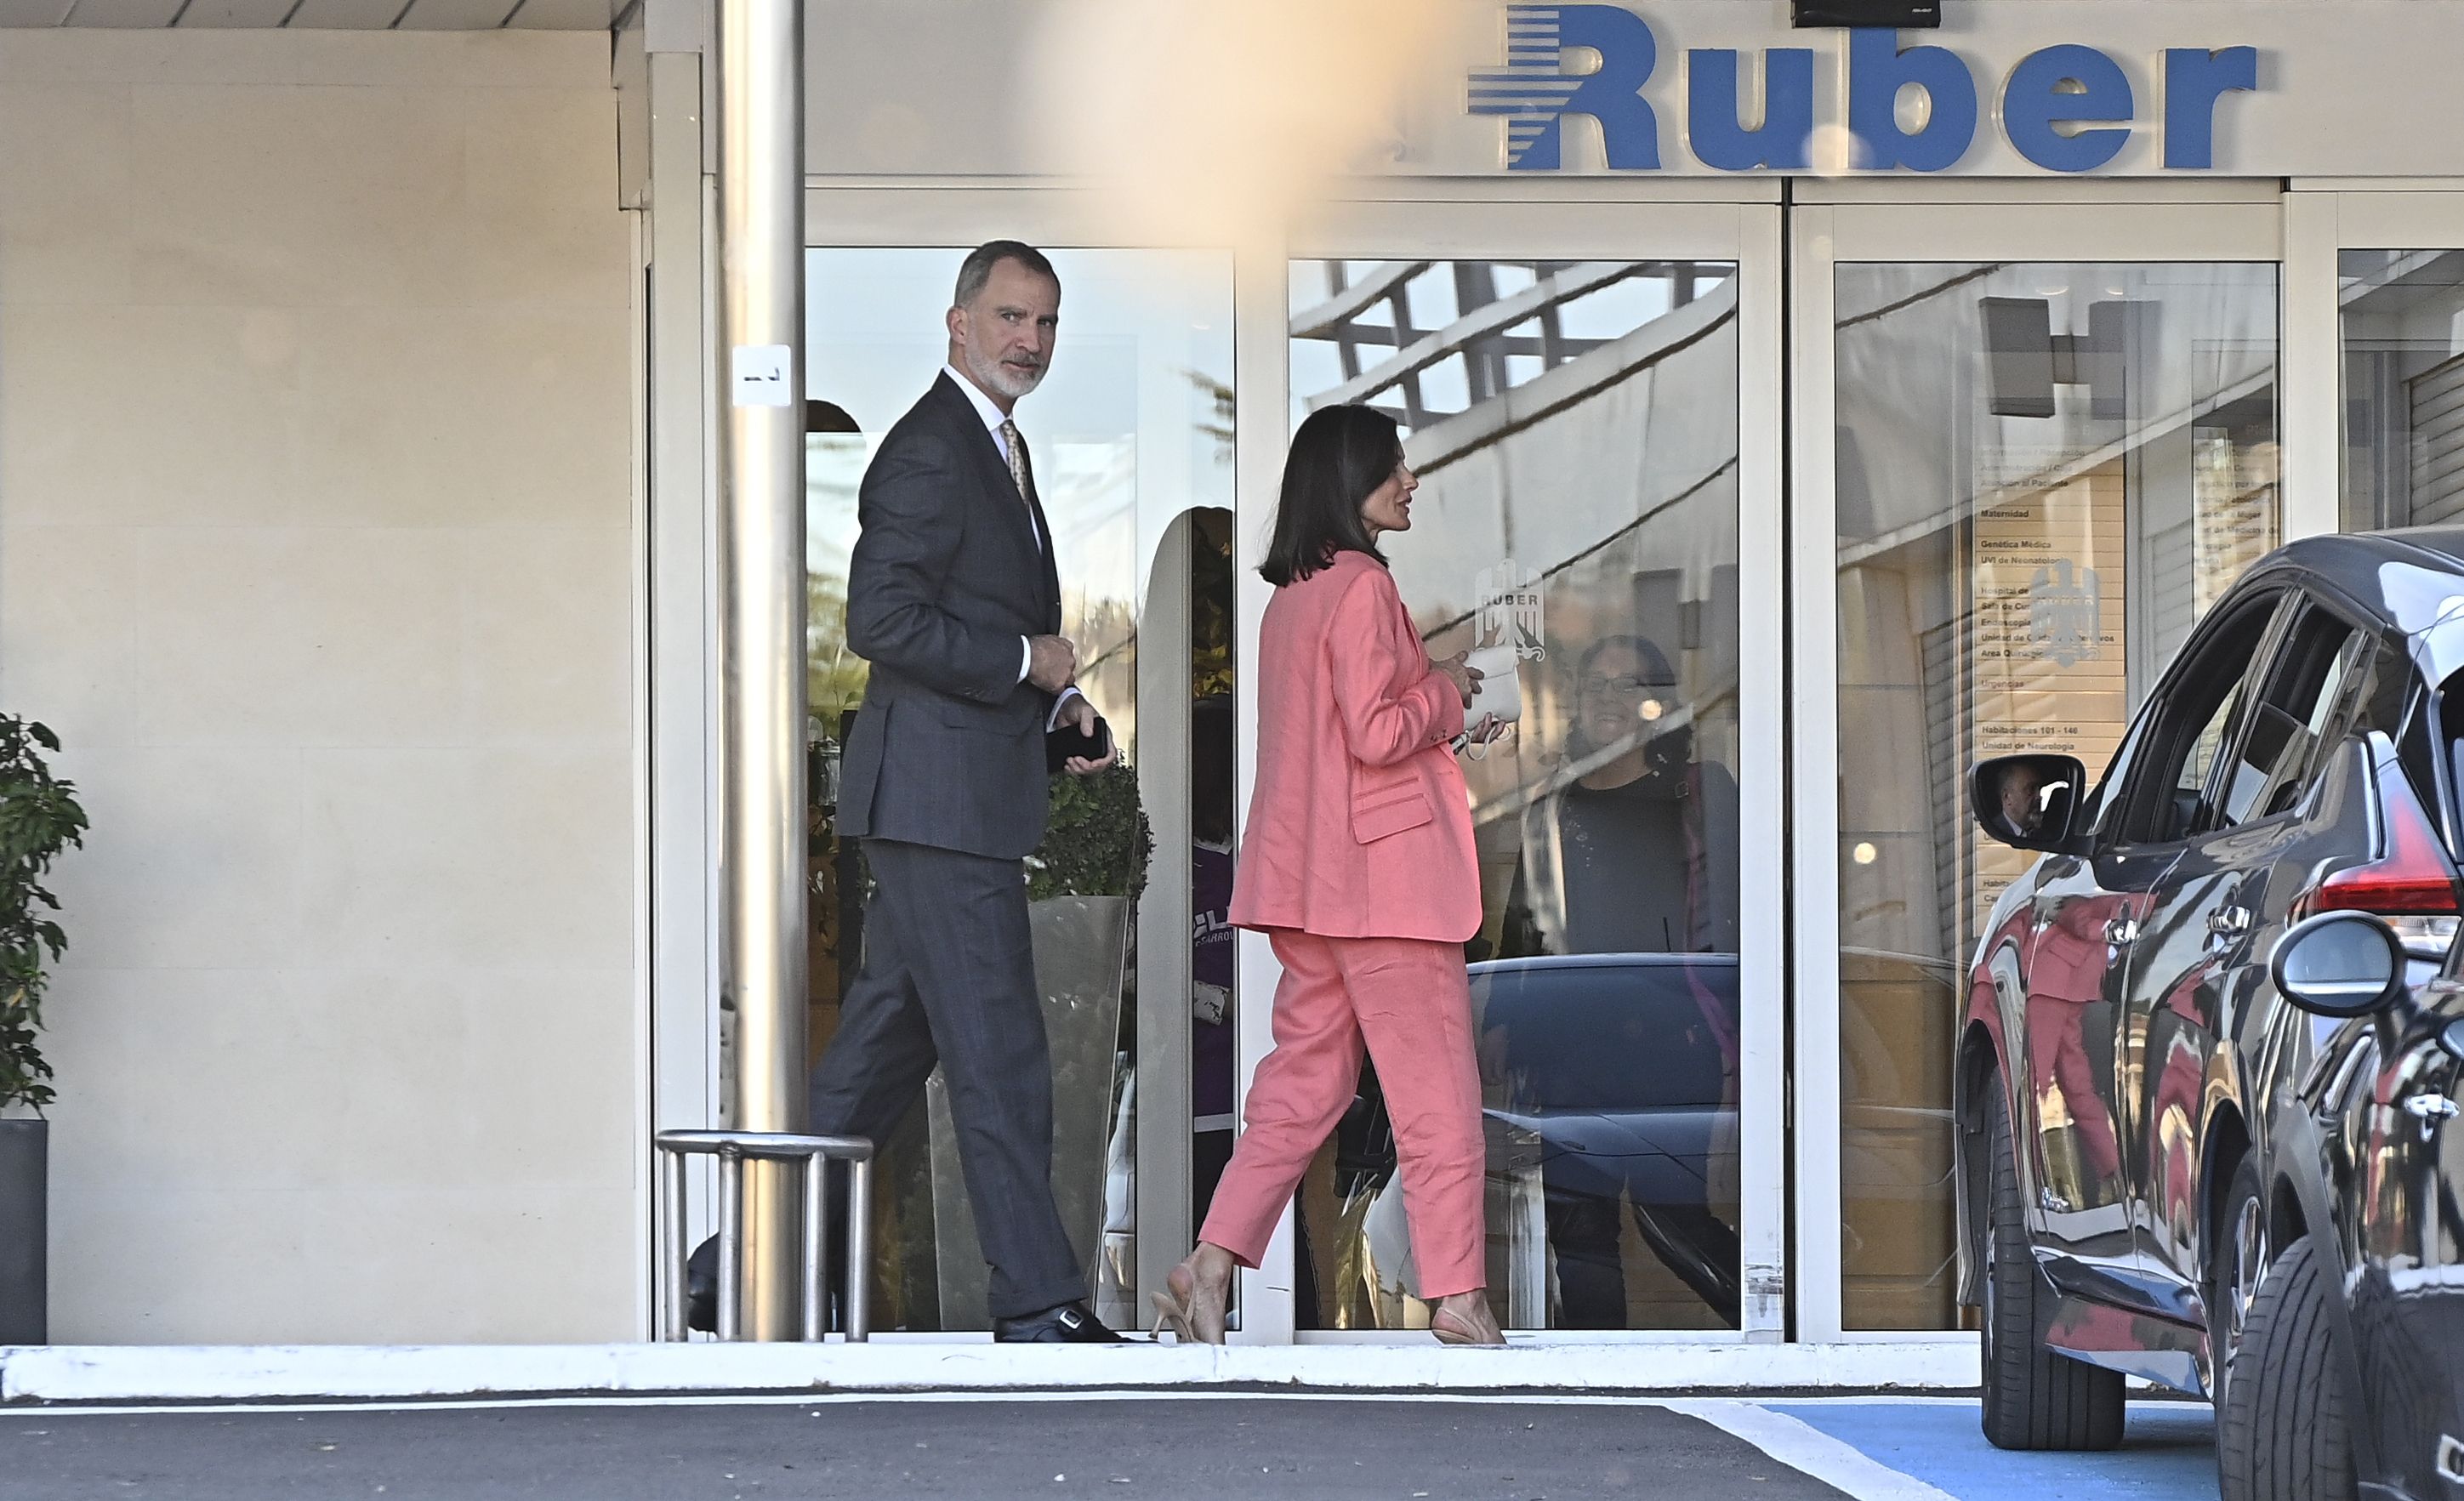 Los Reyes visitan a doña Sofía en el Hospital Ruber Internacional (Quirónsalud)